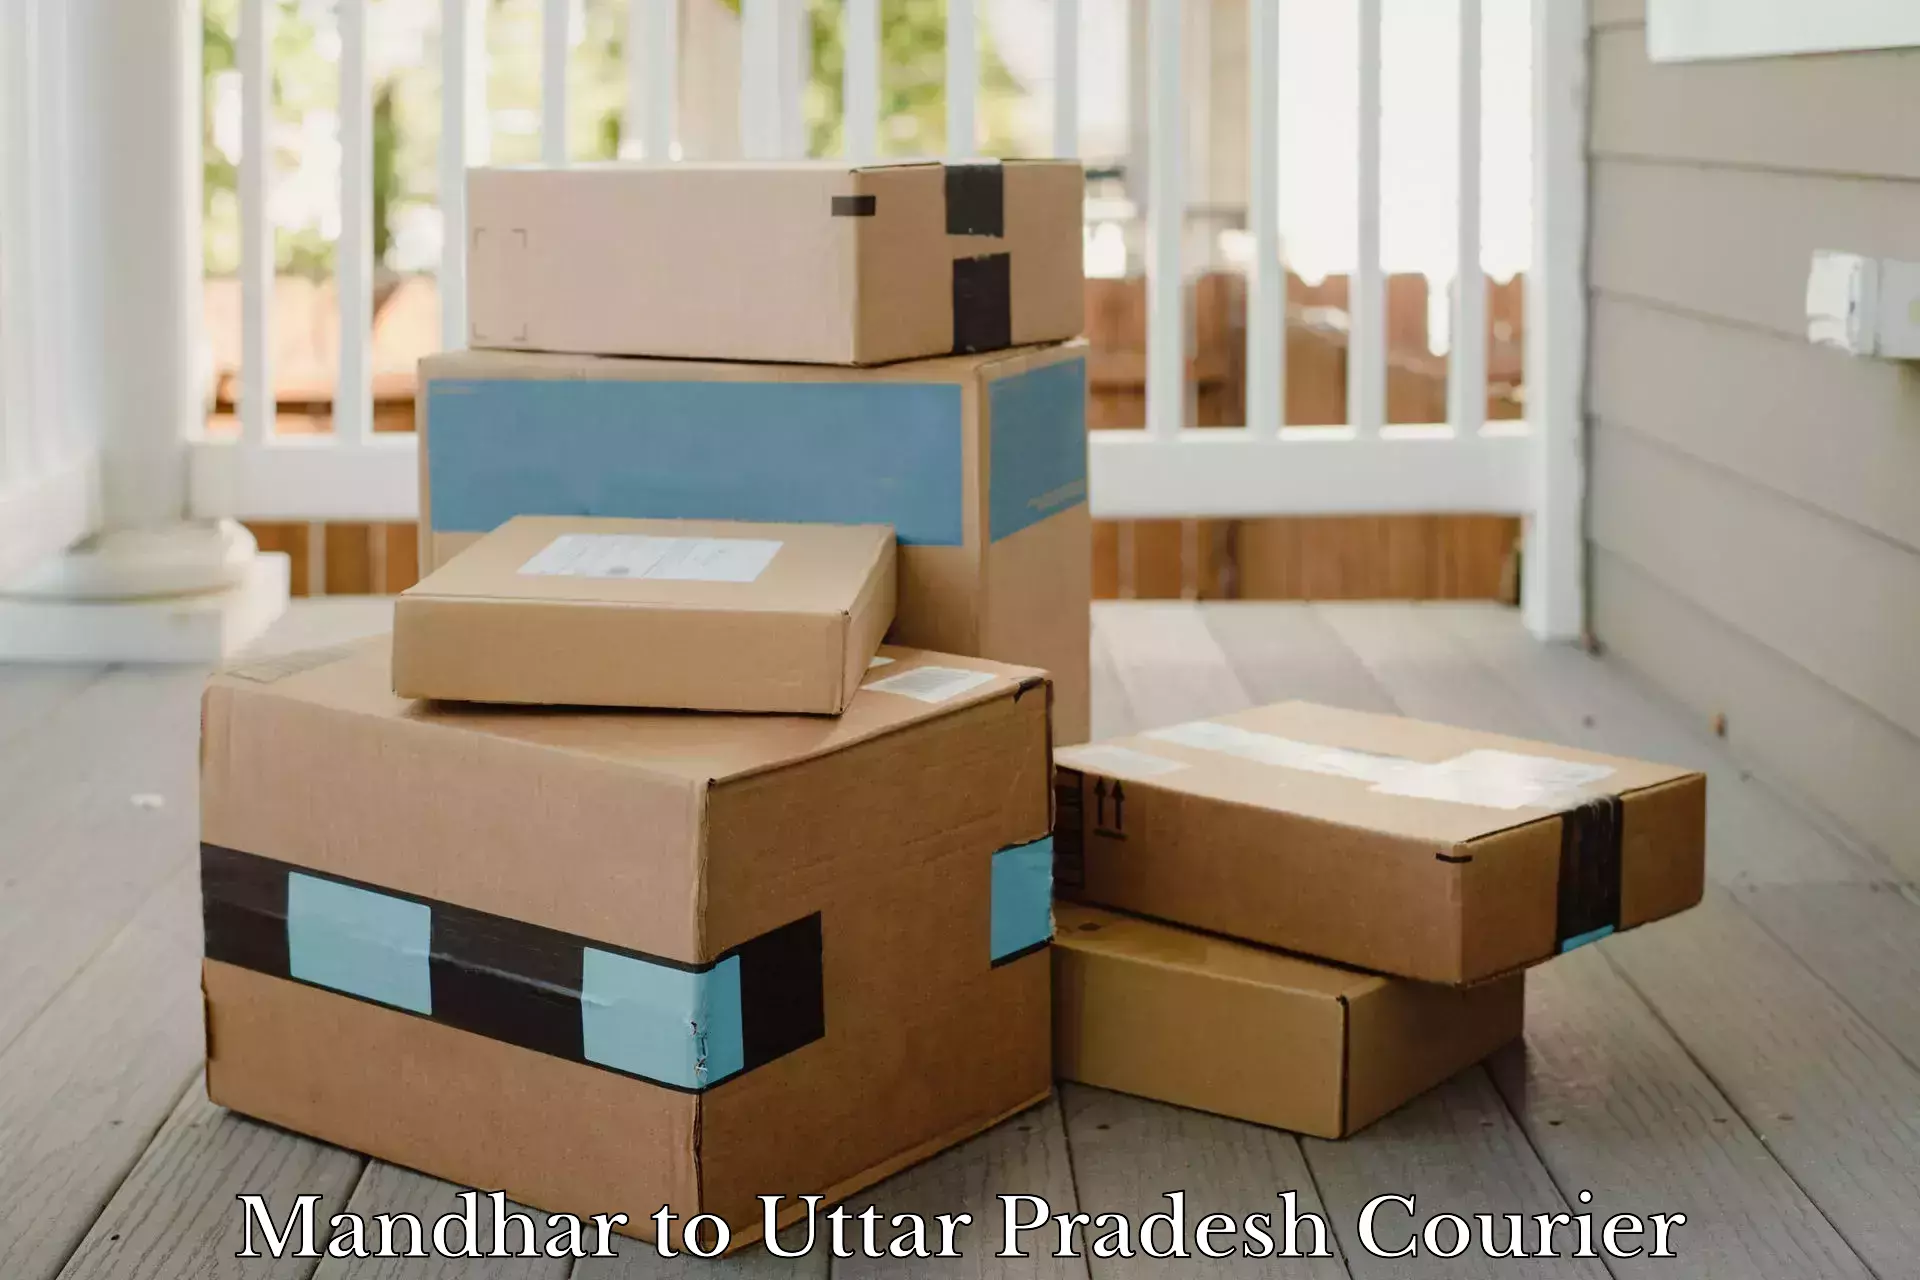 User-friendly courier app Mandhar to Shohratgarh